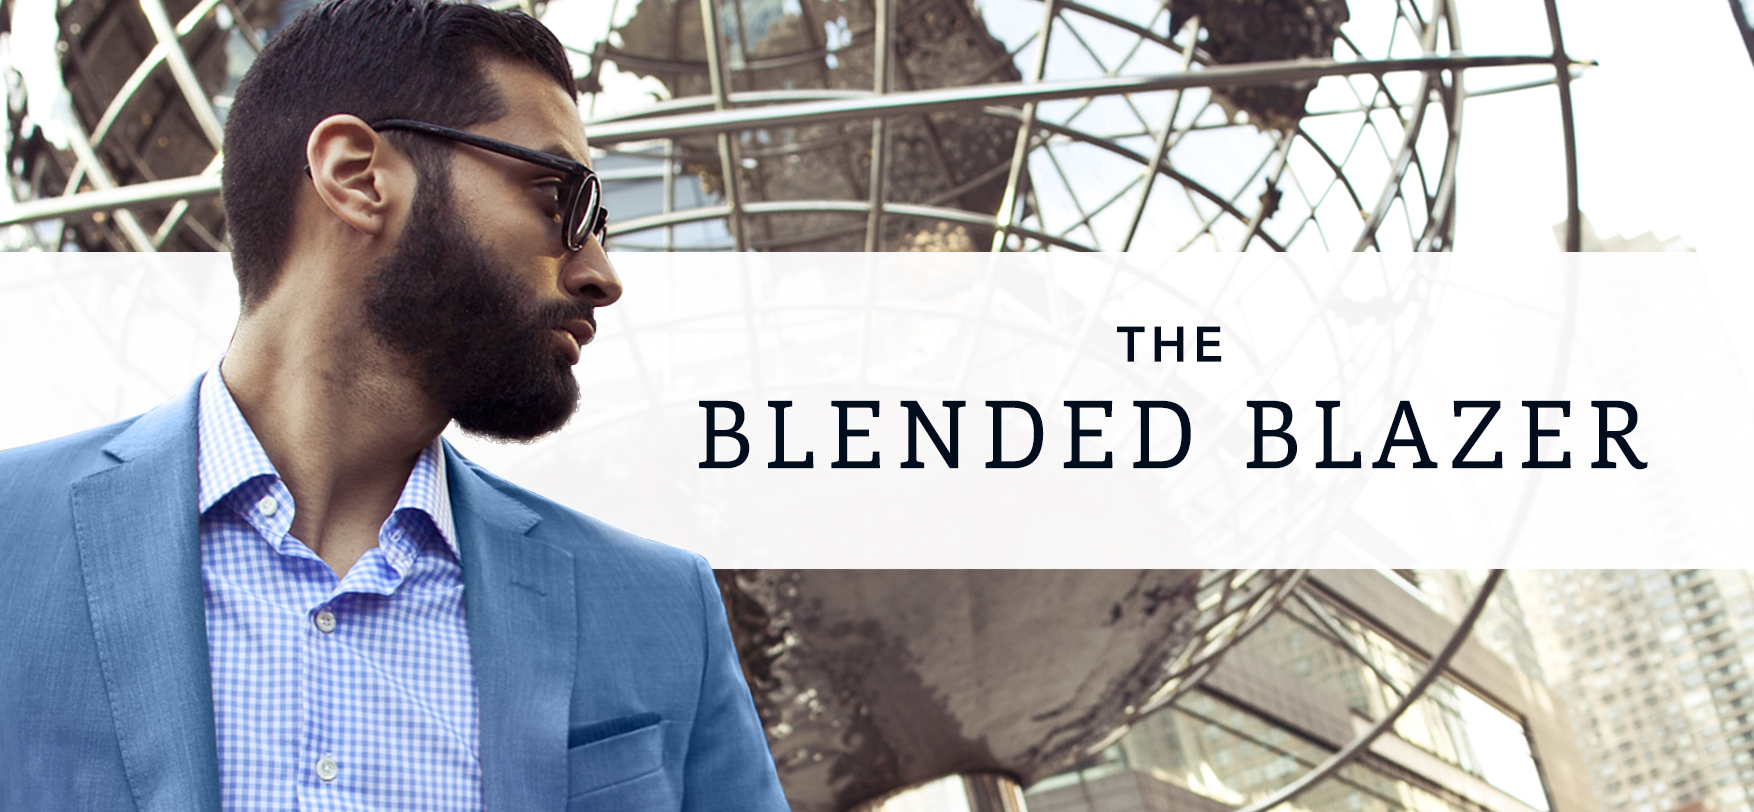 The Blended Blazer